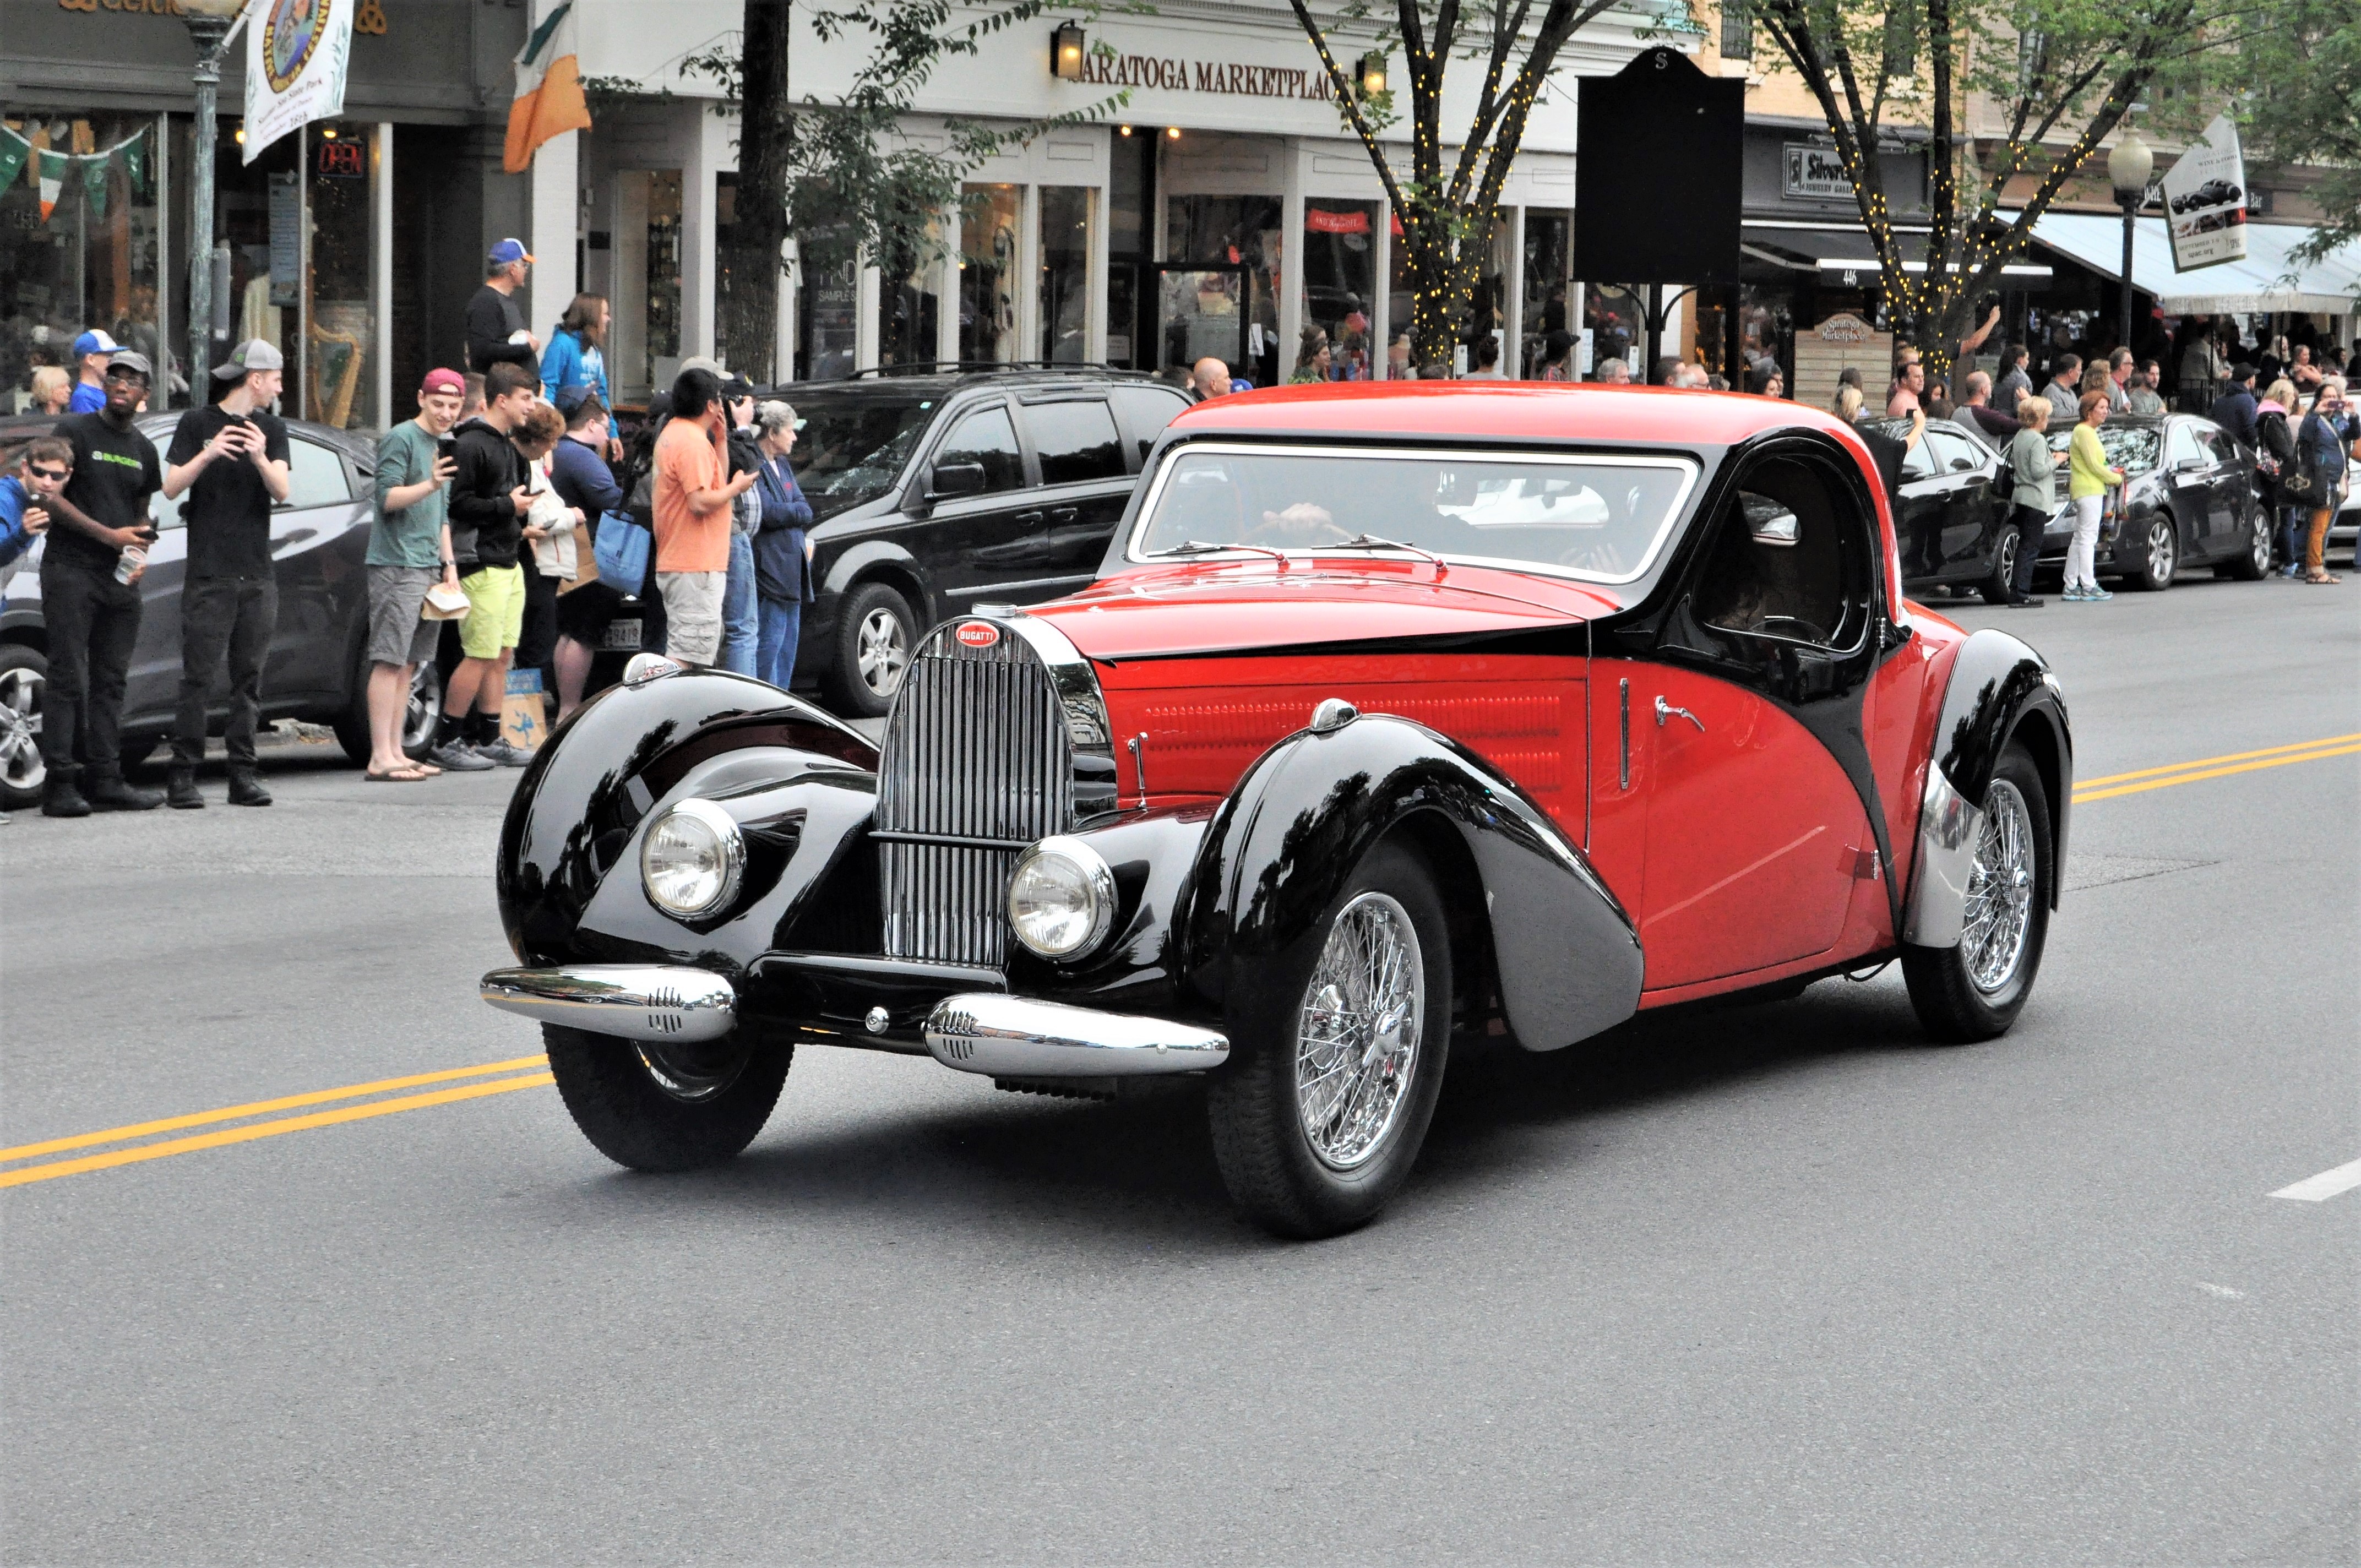 Red Bugatti parade car 6